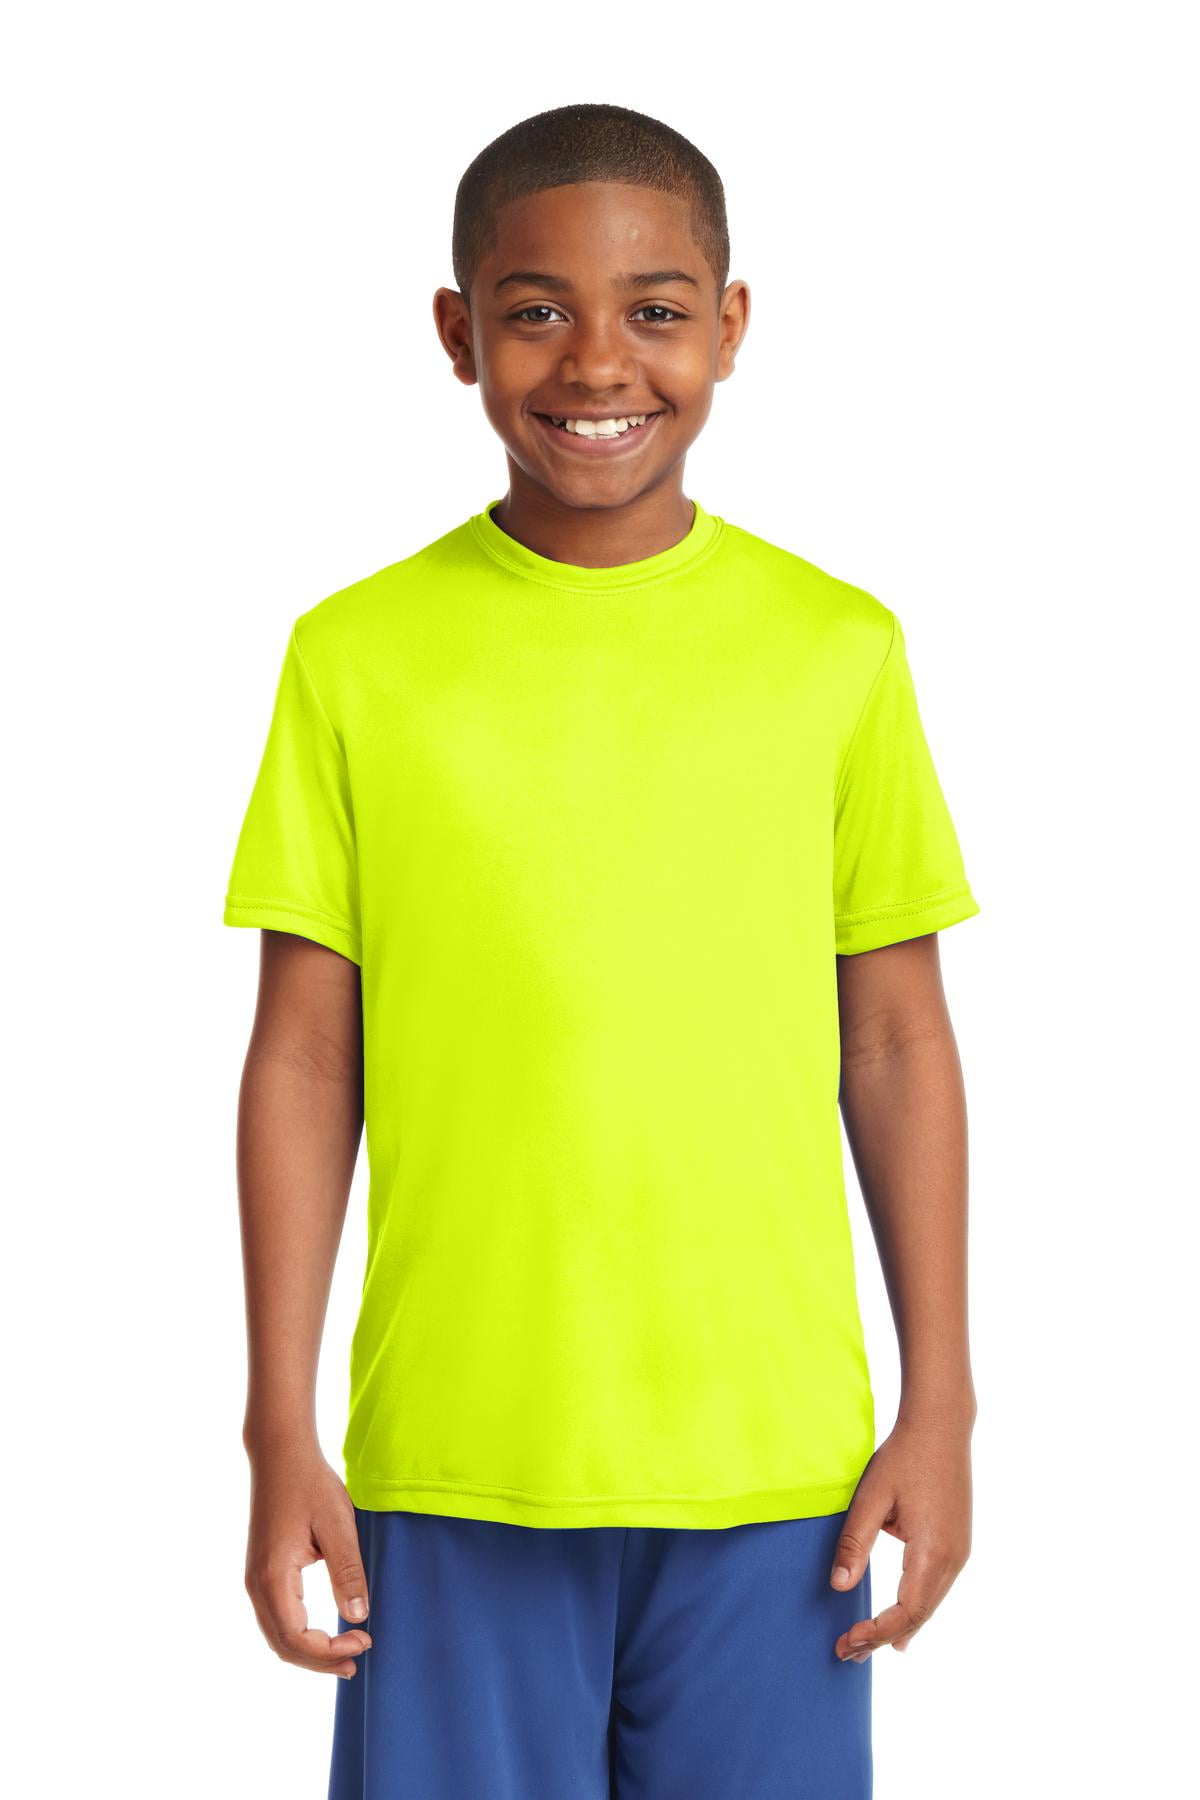 SB Kids Fishing Shirt - Neon Yellow – Southern Boy Co.